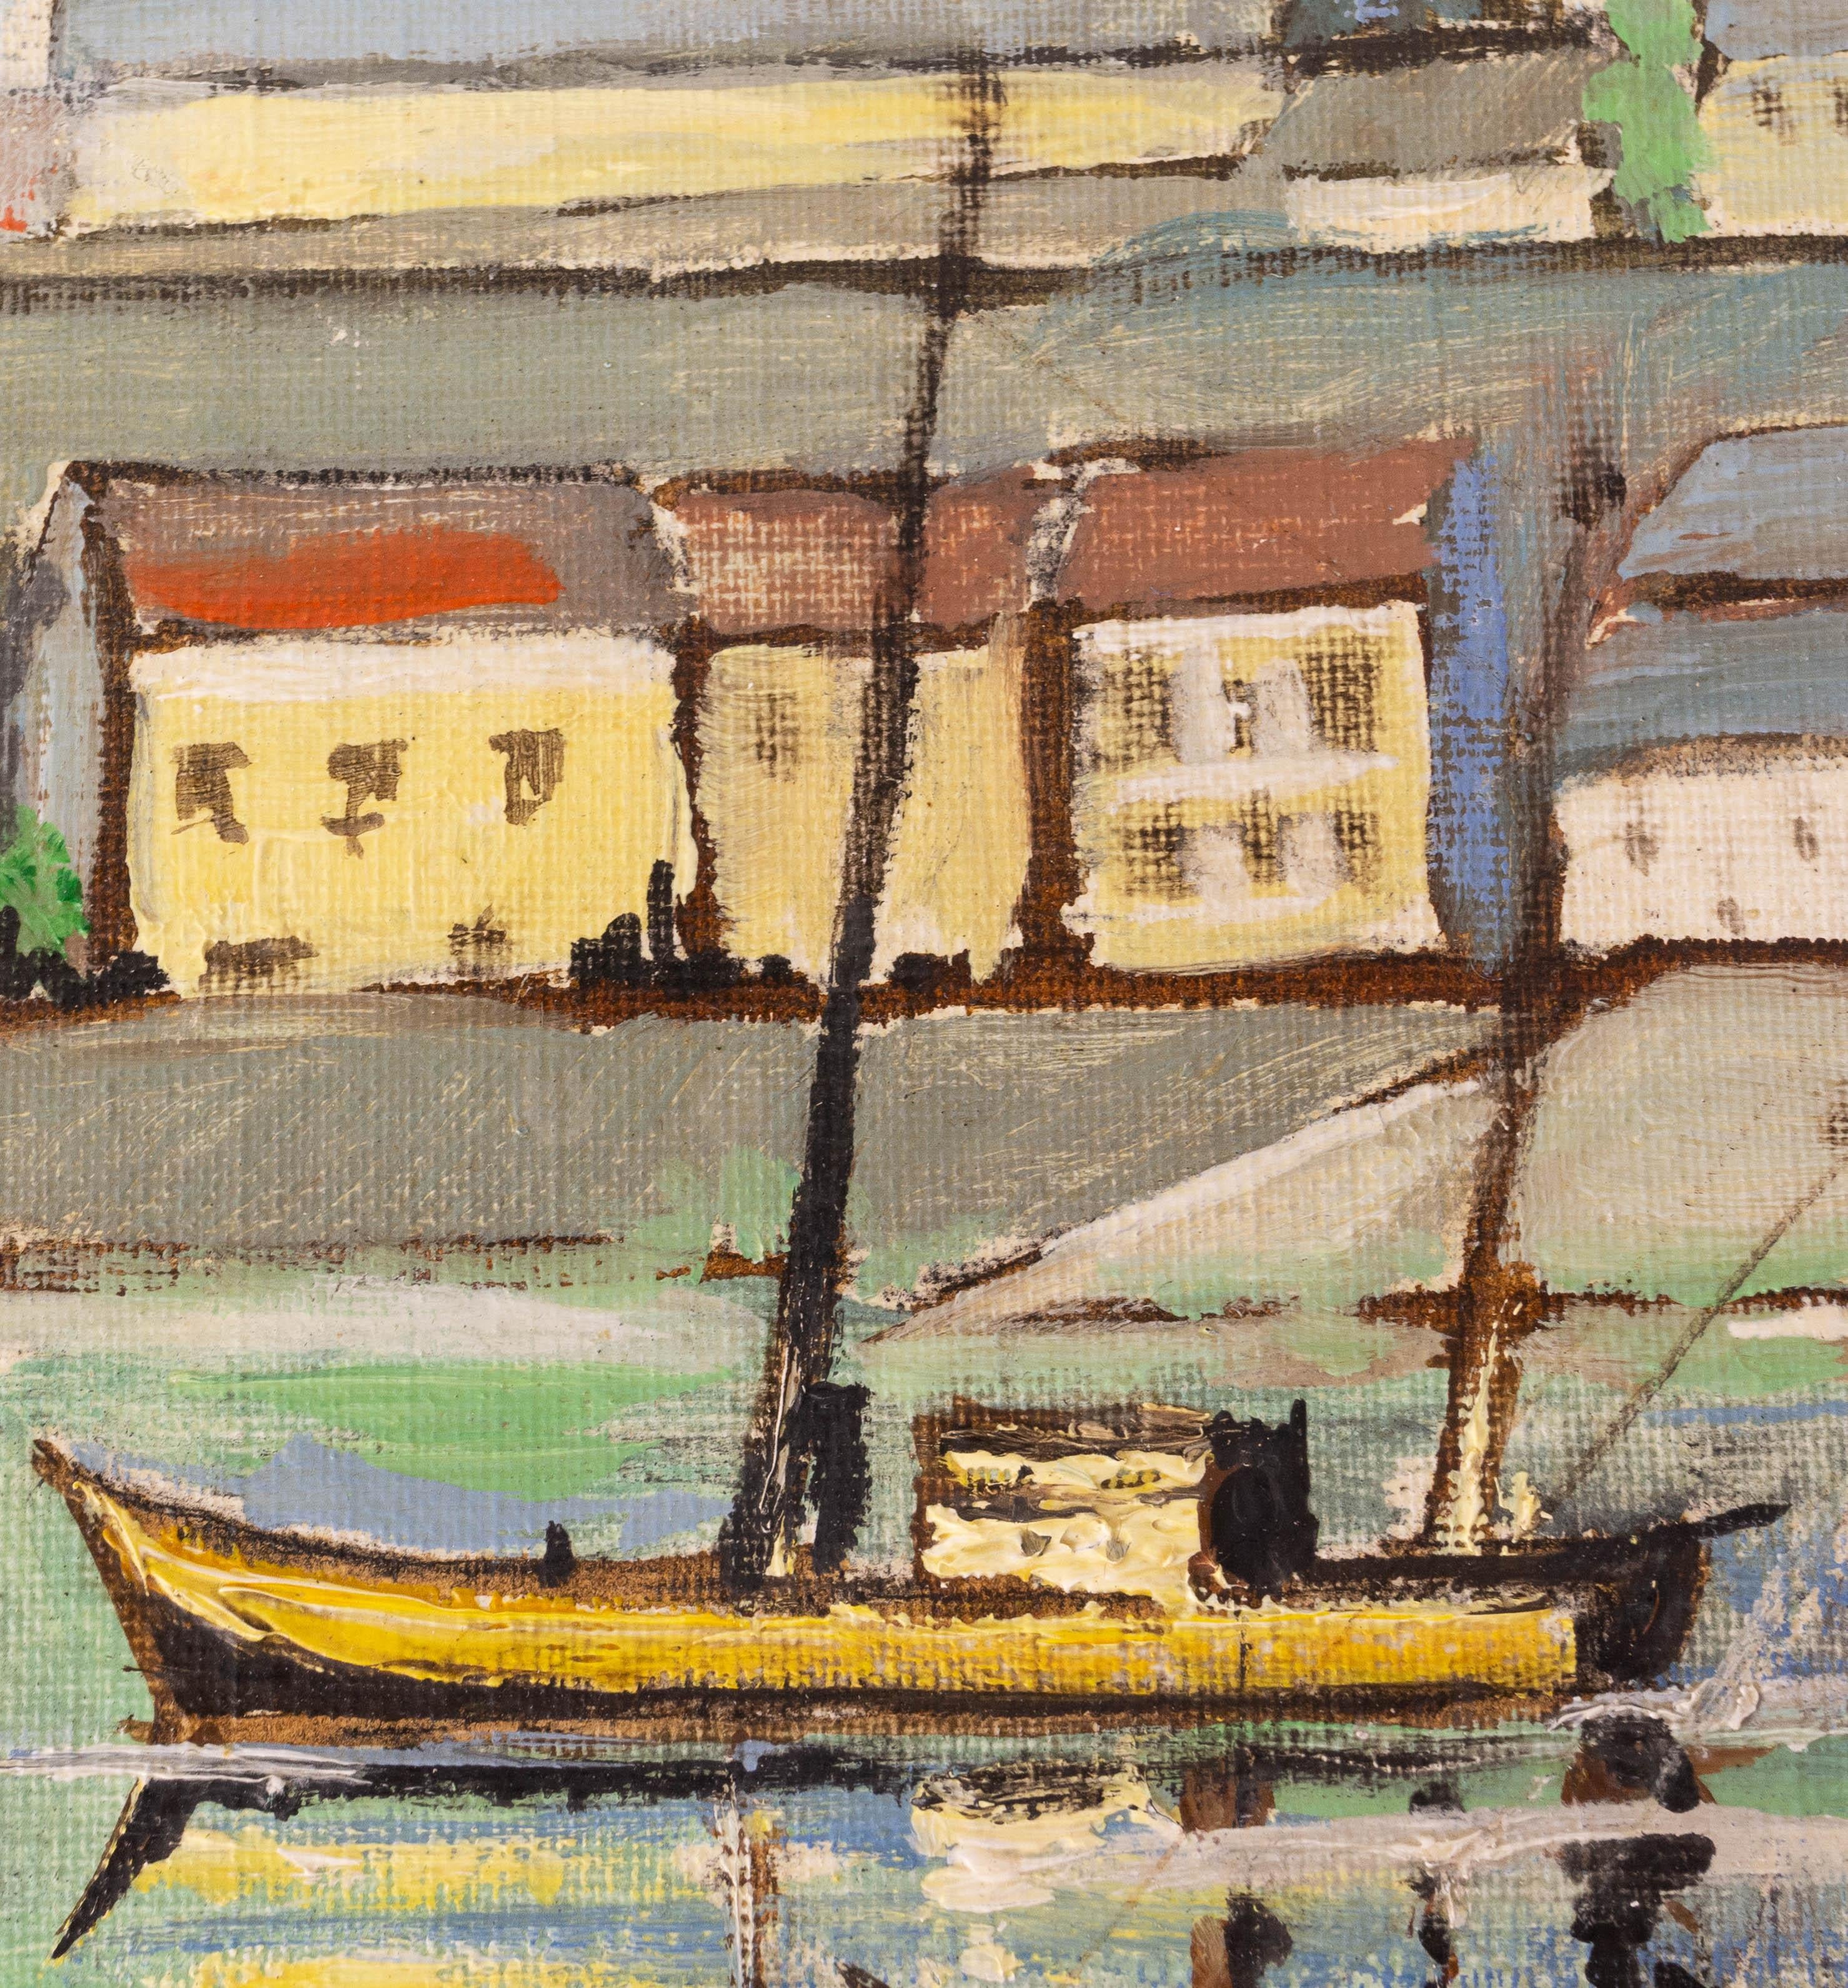 1966 Peinture à l'huile dans le style impressionniste.
Huile sur toile représentant des navires dans un port de Bretagne. Au loin, on aperçoit le village et son église.
Beau travail de matière sur le ciel.
Signé par Jean KOK.

Bon état.

Expédition